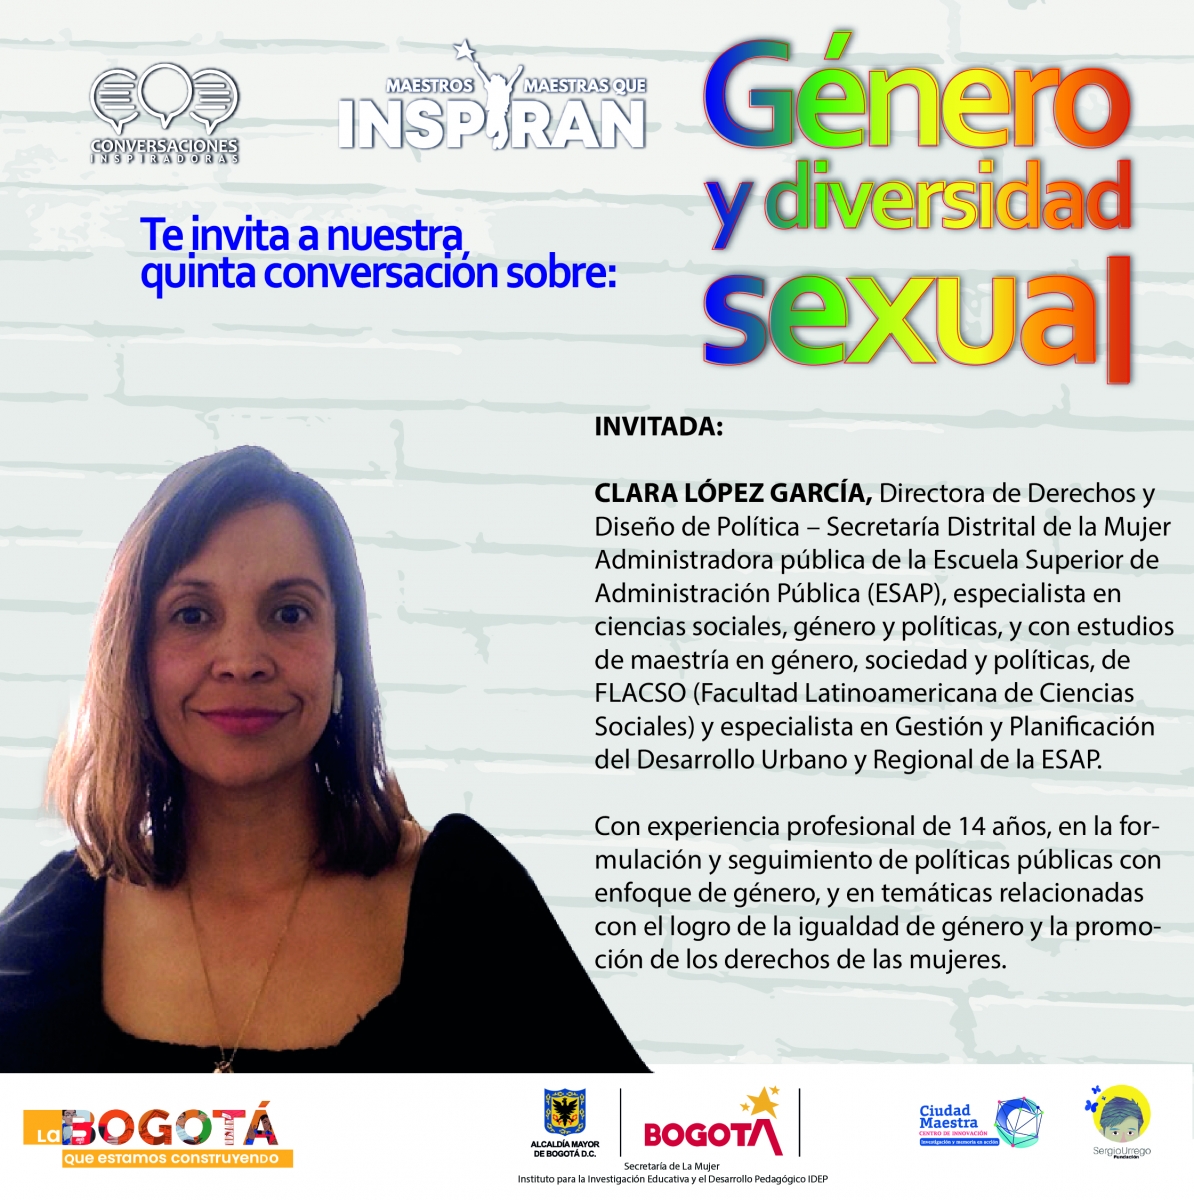 Imagen con la foto de la  Directora de Derechos y Diseño de Política Clara López Garcia y un breve perfil de ella